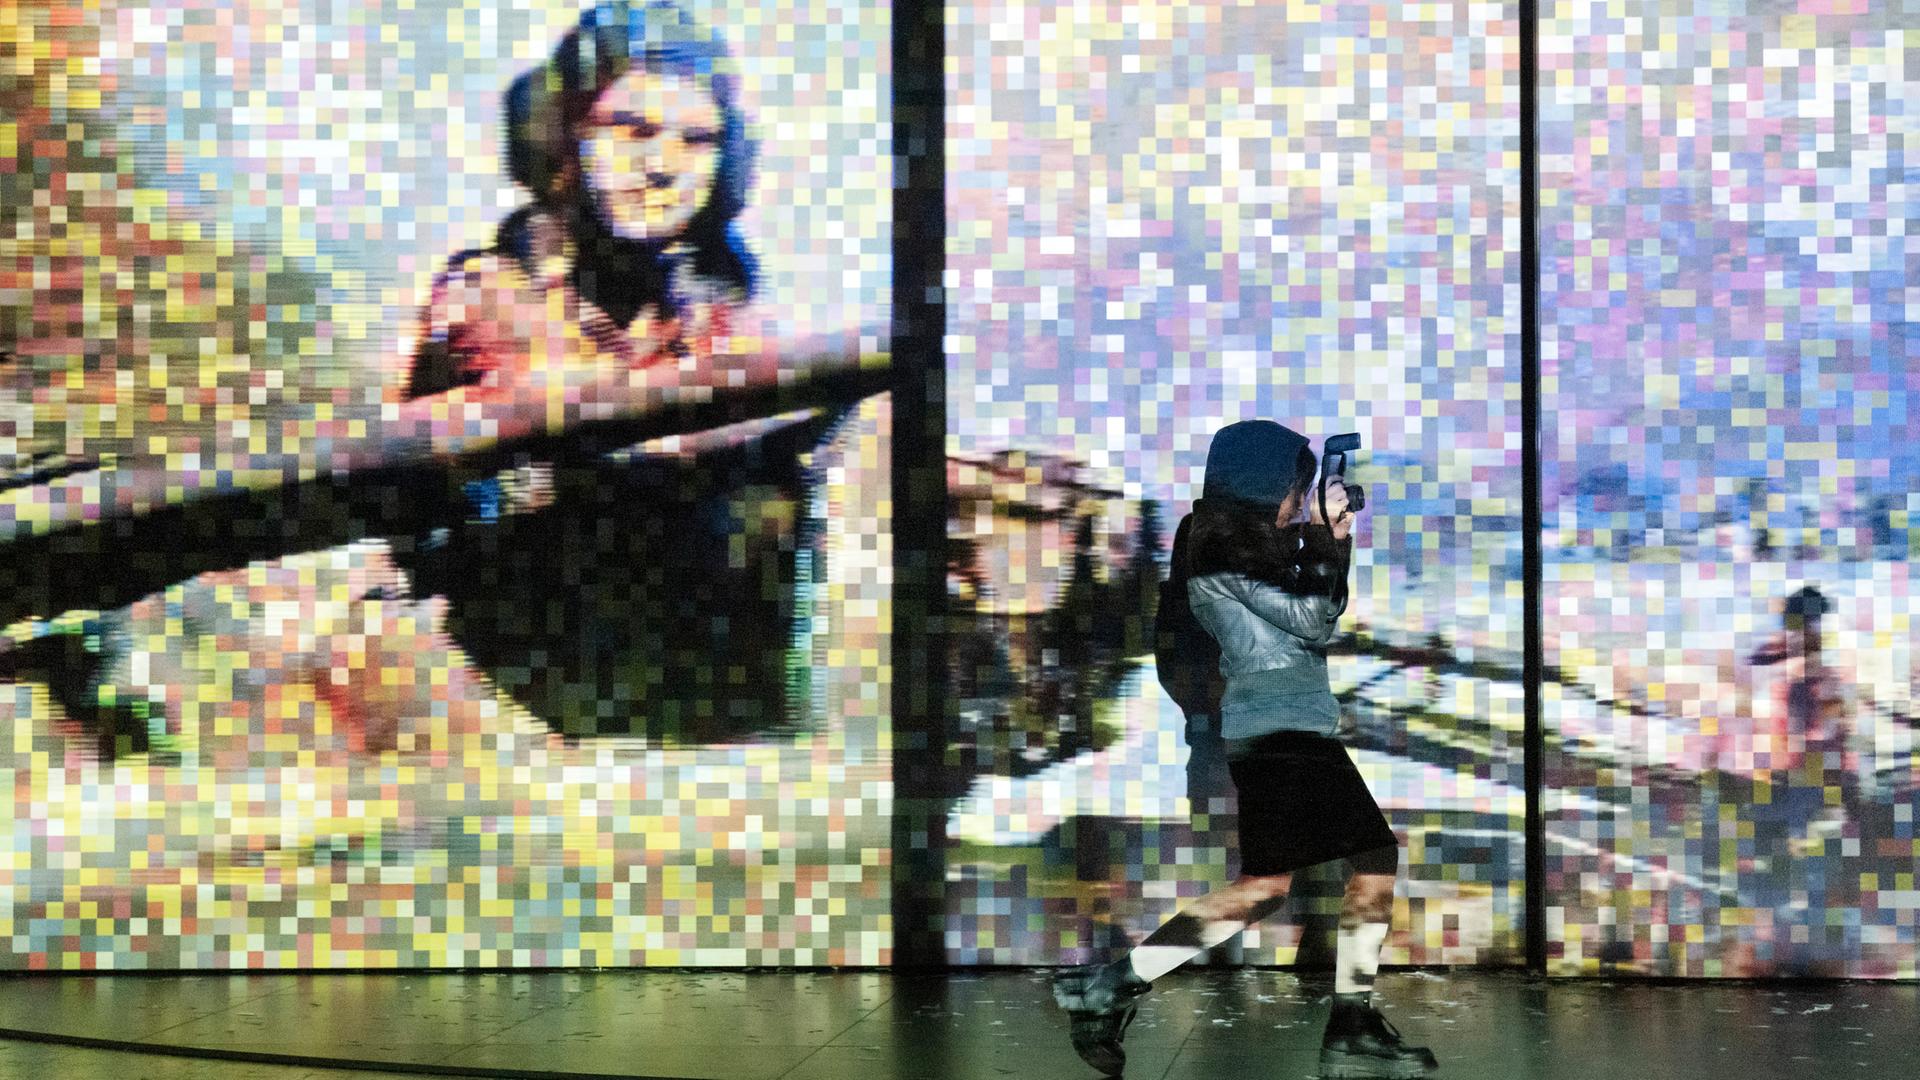 Foto von der Inszenierung: Eine Frau fotografiert im Vordergrund. Im Hintergrund ist ein verpixeltes Bild eines Panzerfahres in Aktion zu sehen.